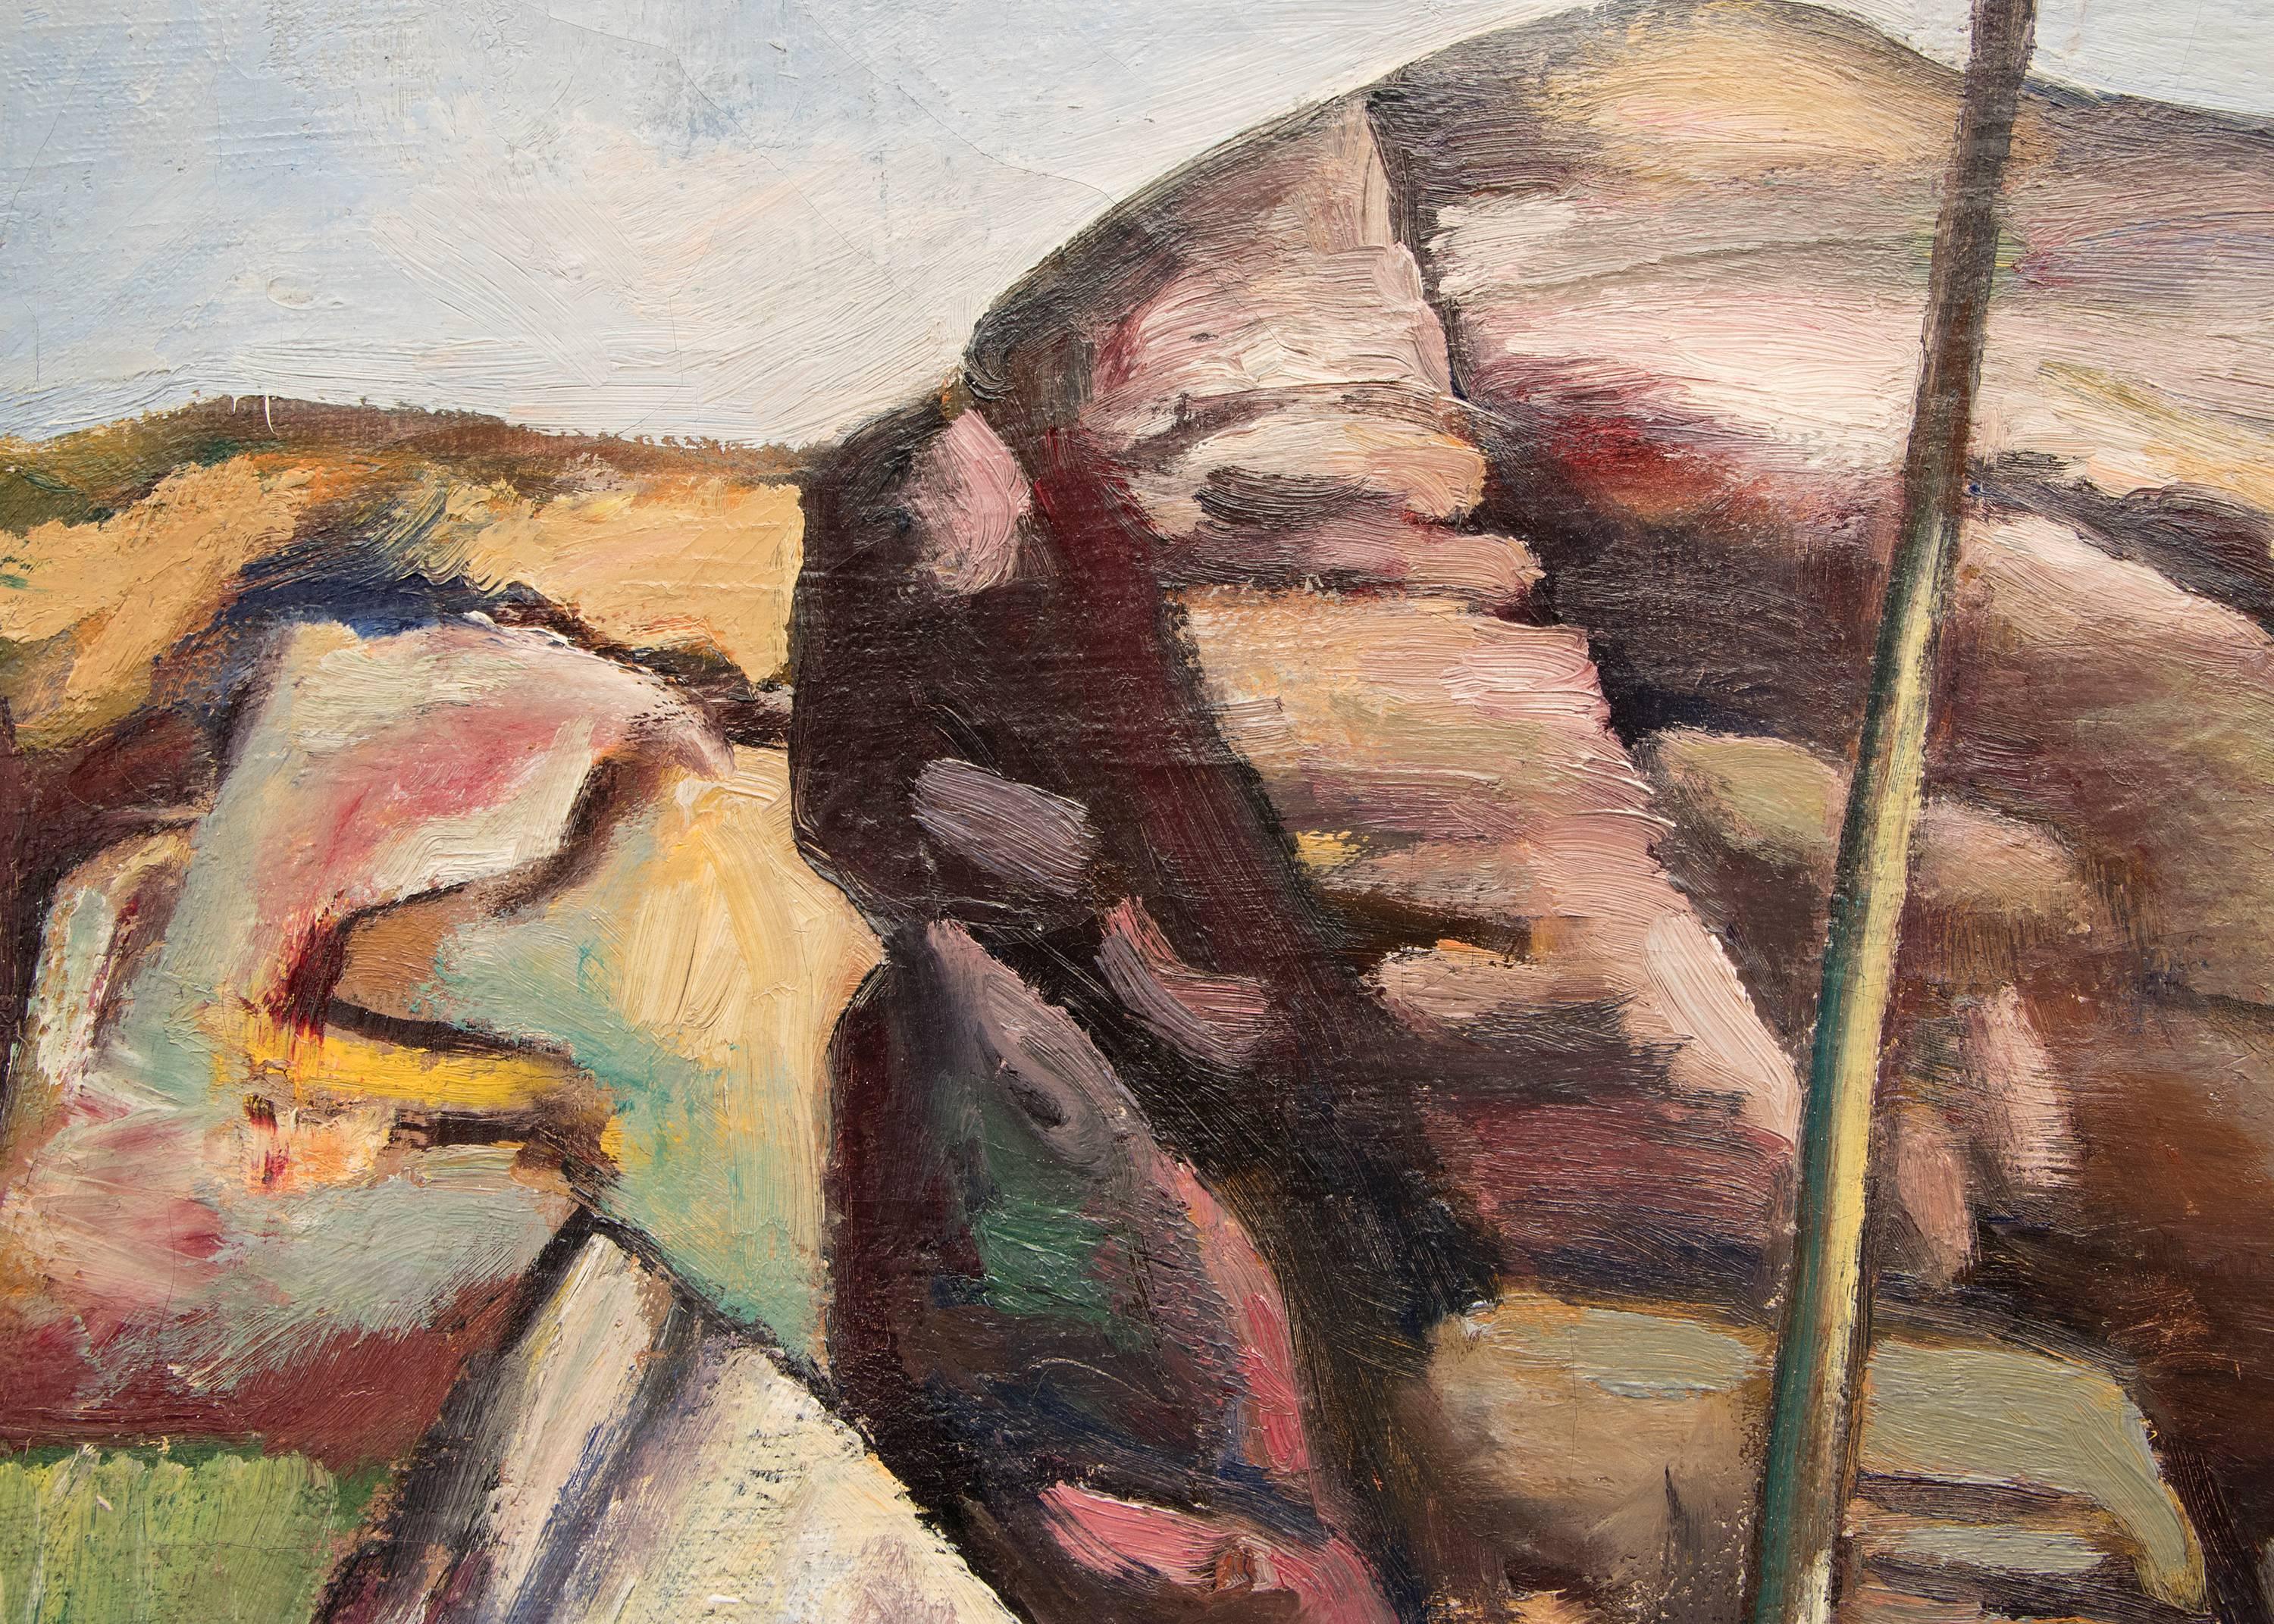 Paysage de montagne moderniste (probablement du Colorado), peinture à l'huile des années 1930 par Jan Matulka (1890-1972). Sogmed nu tje artist en bas à droite, cachet de la succession au verso. Cadre personnalisé sculpté à la main mesurant 30 x 35